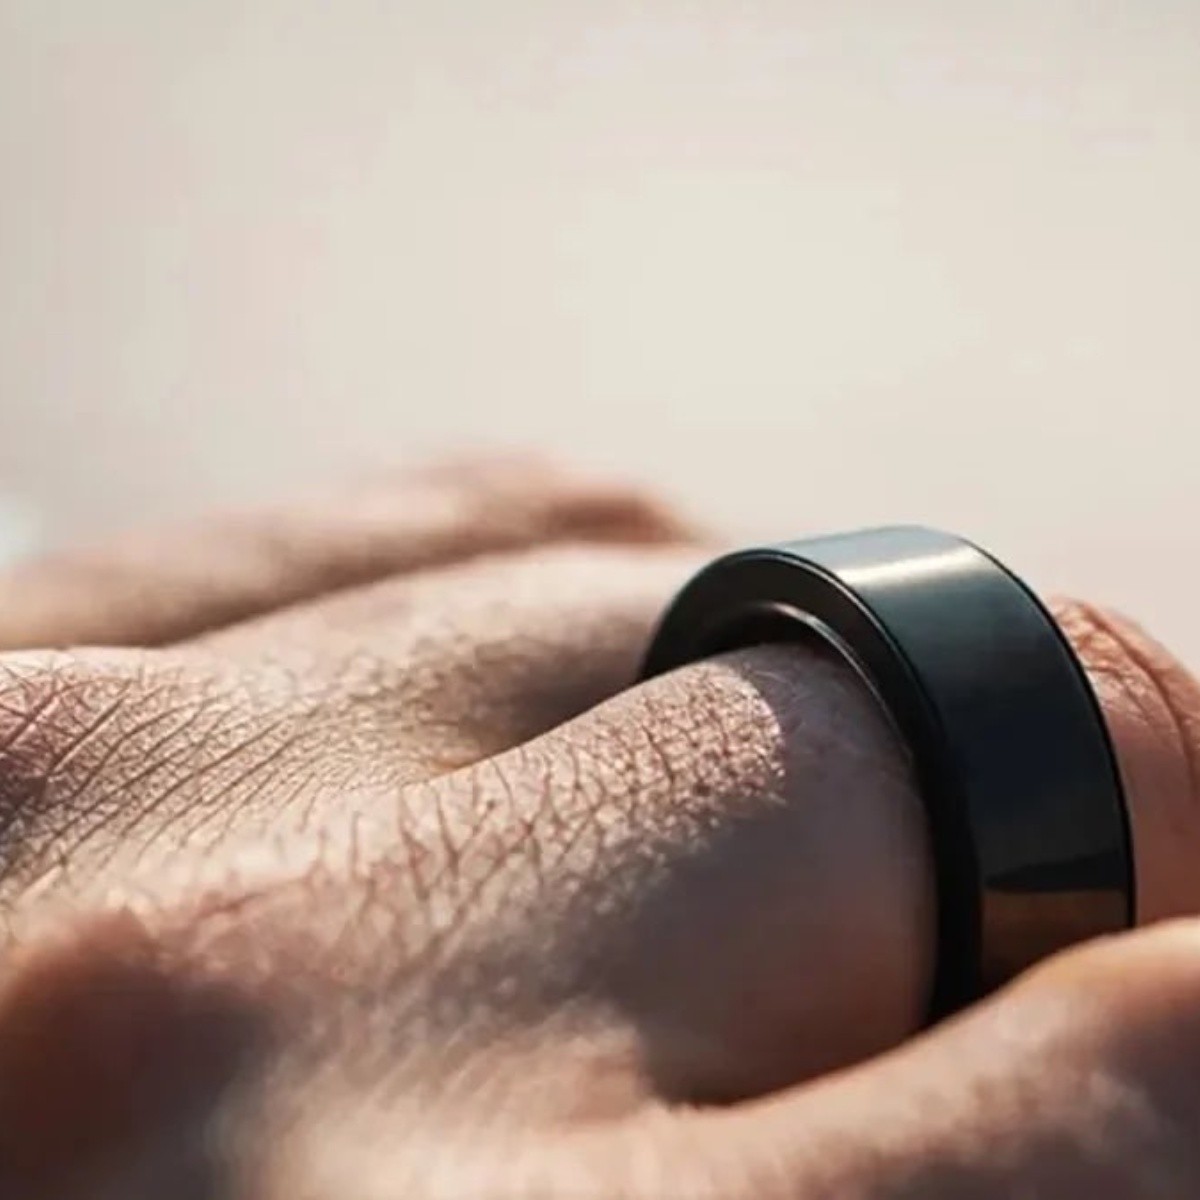 Olvídate del smarwatch: Samsung y Apple ya preparan anillos para  monitorizar tu salud